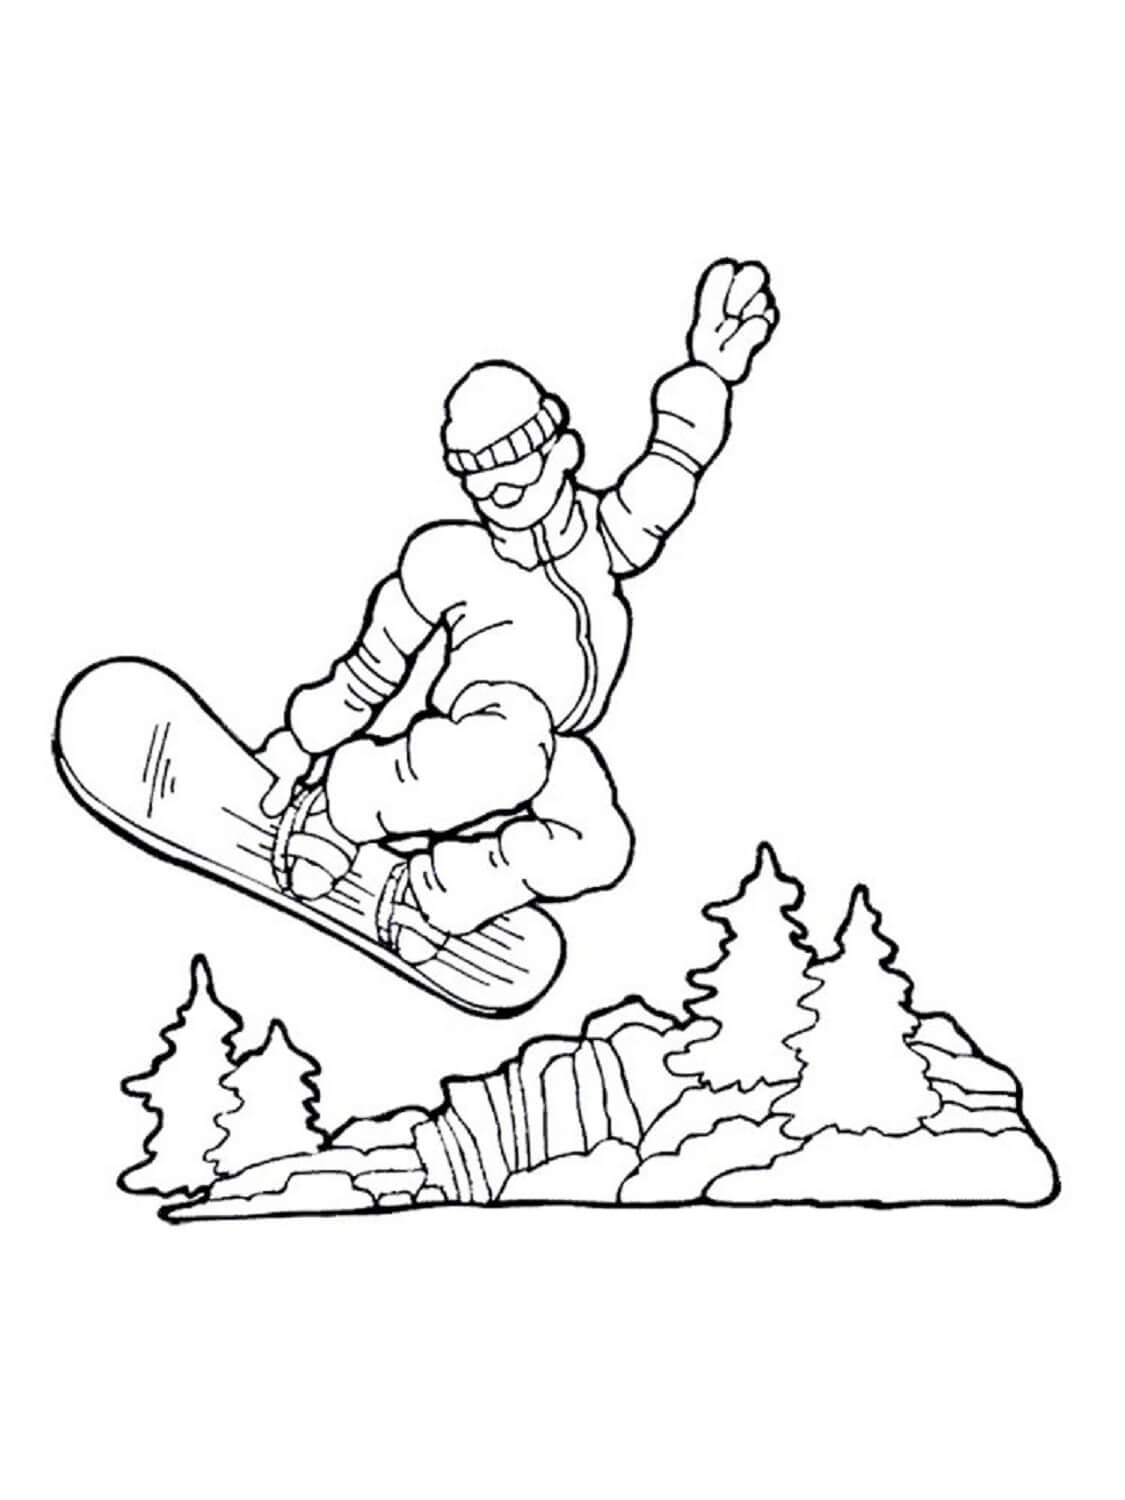 Desenhos de Snowboard Básico para colorir